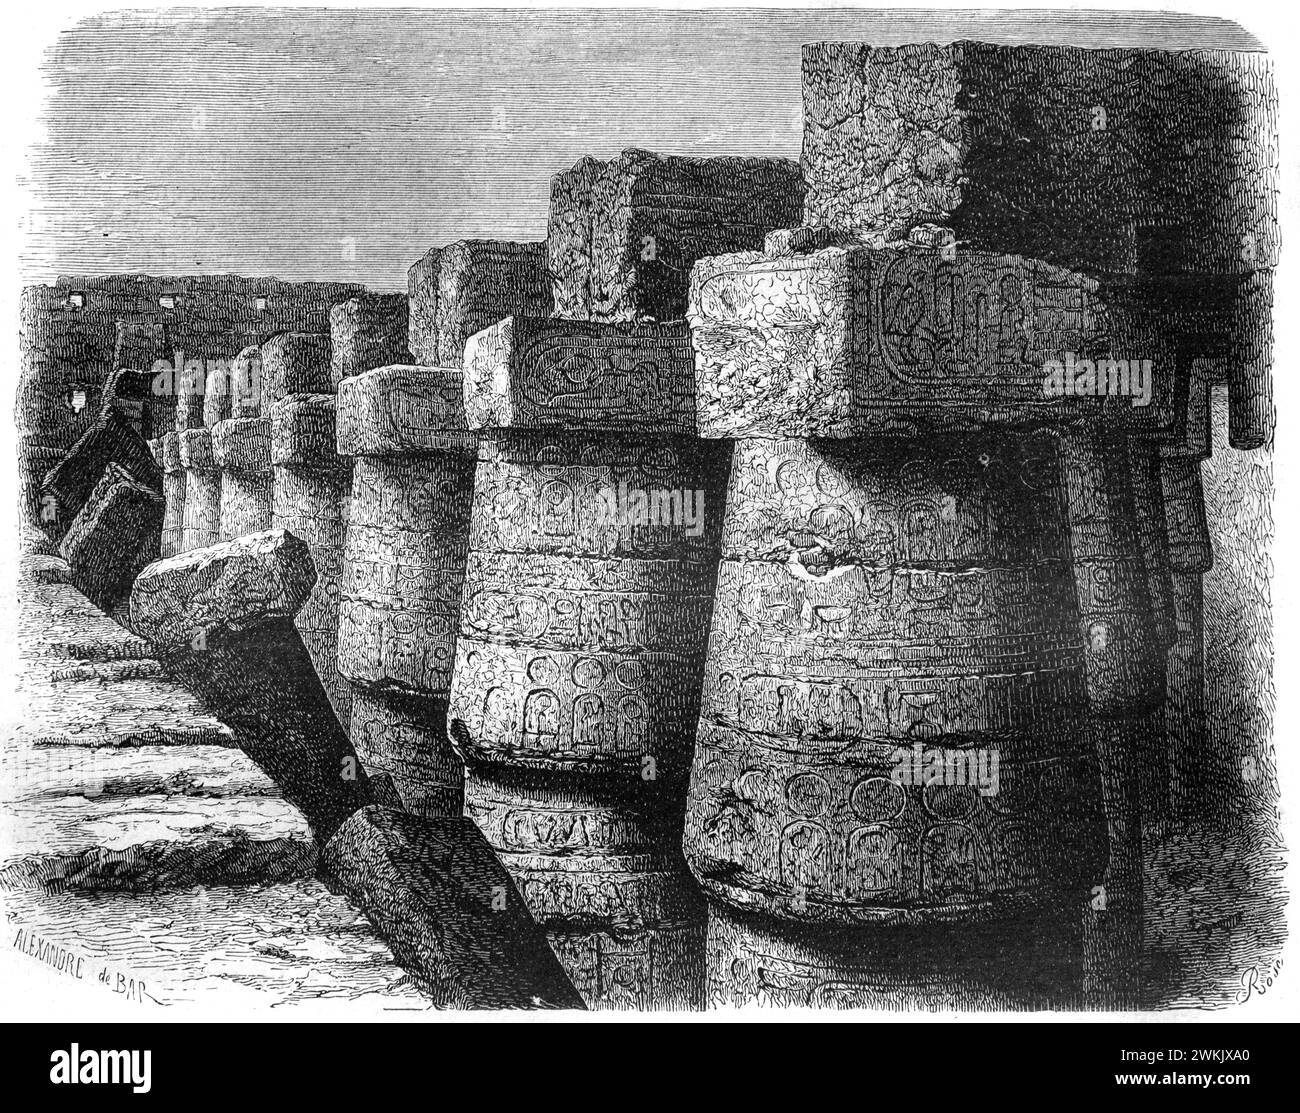 Massive Steinsäulen mit Hieroglphen Motiven in den antiken Ruinen im Karnak Tempelkomplex El-Karnak Luxur Ägypten. Vintage oder historische Gravur oder Illustration 1963. Stockfoto